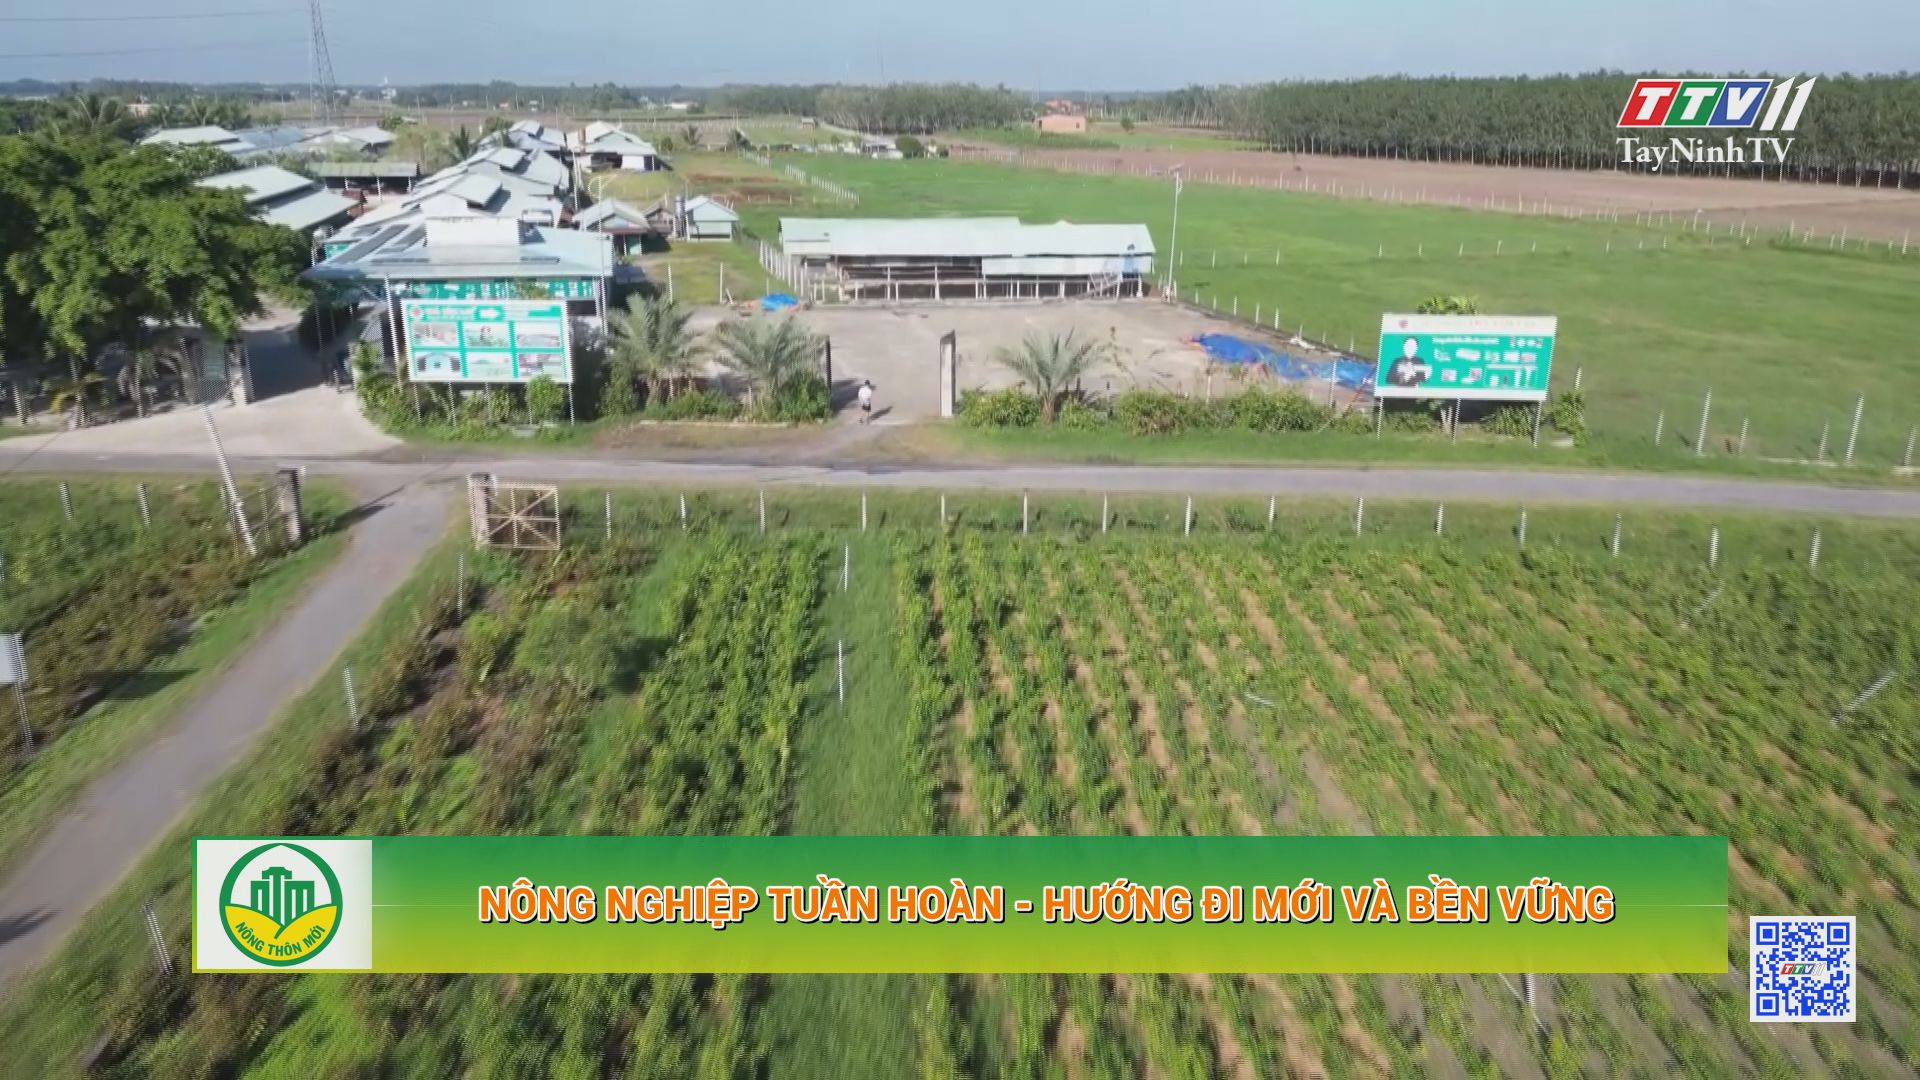 Nông nghiệp tuần hoàn - hướng đi mới và bền vững | Tây Ninh xây dựng nông thôn mới | TayNinhTV